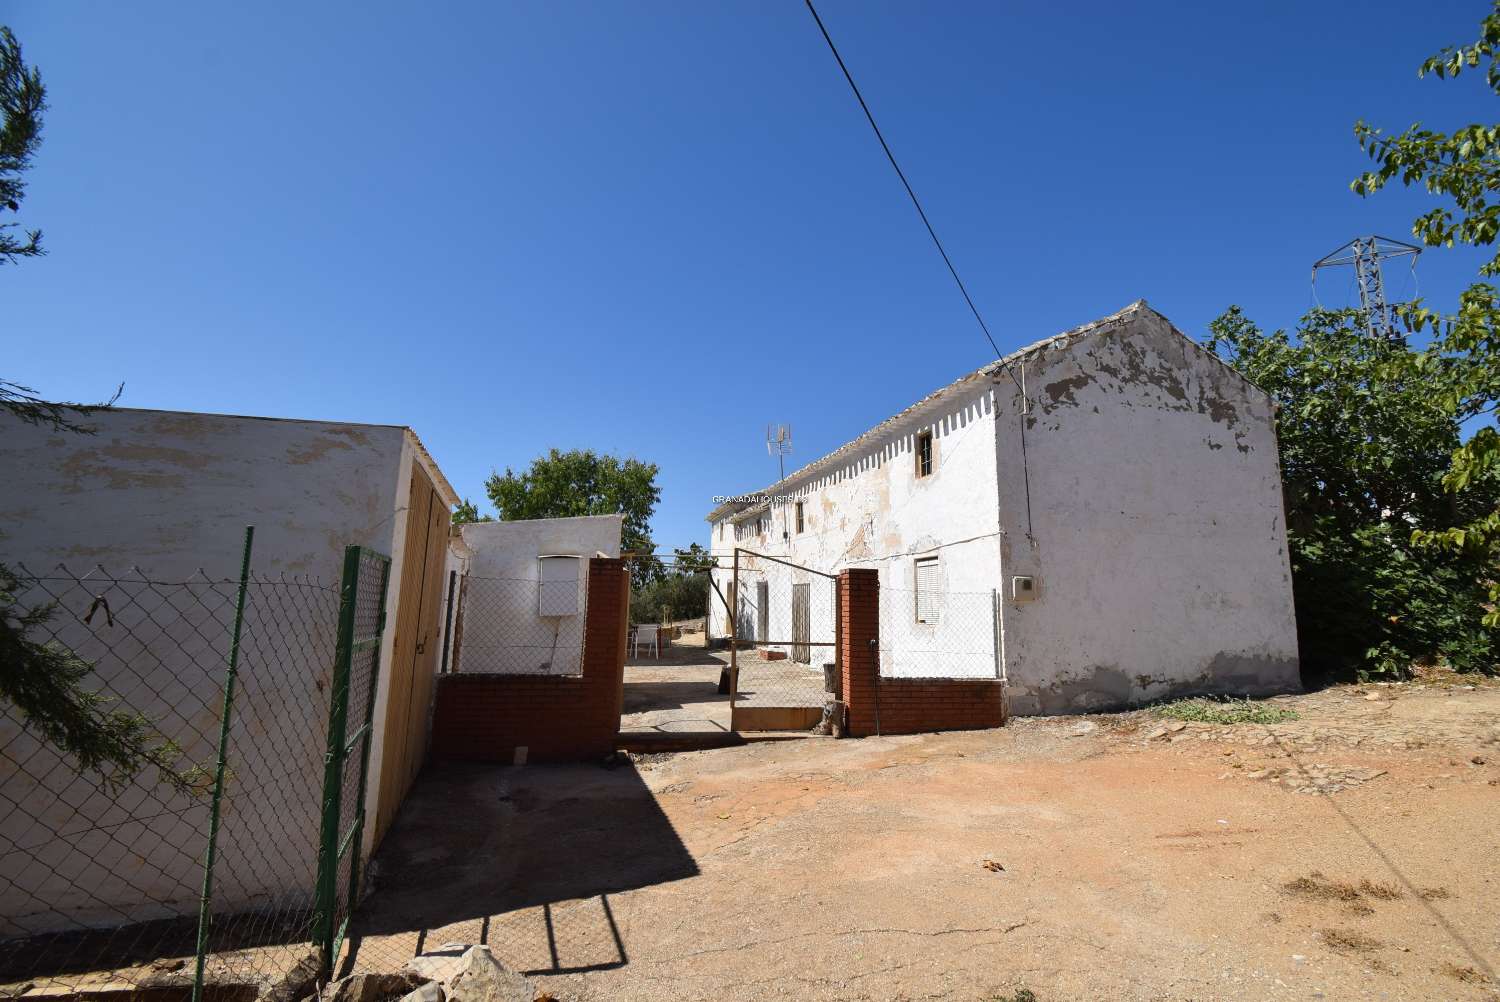 Andalusisches Bauernhaus zum Renovieren